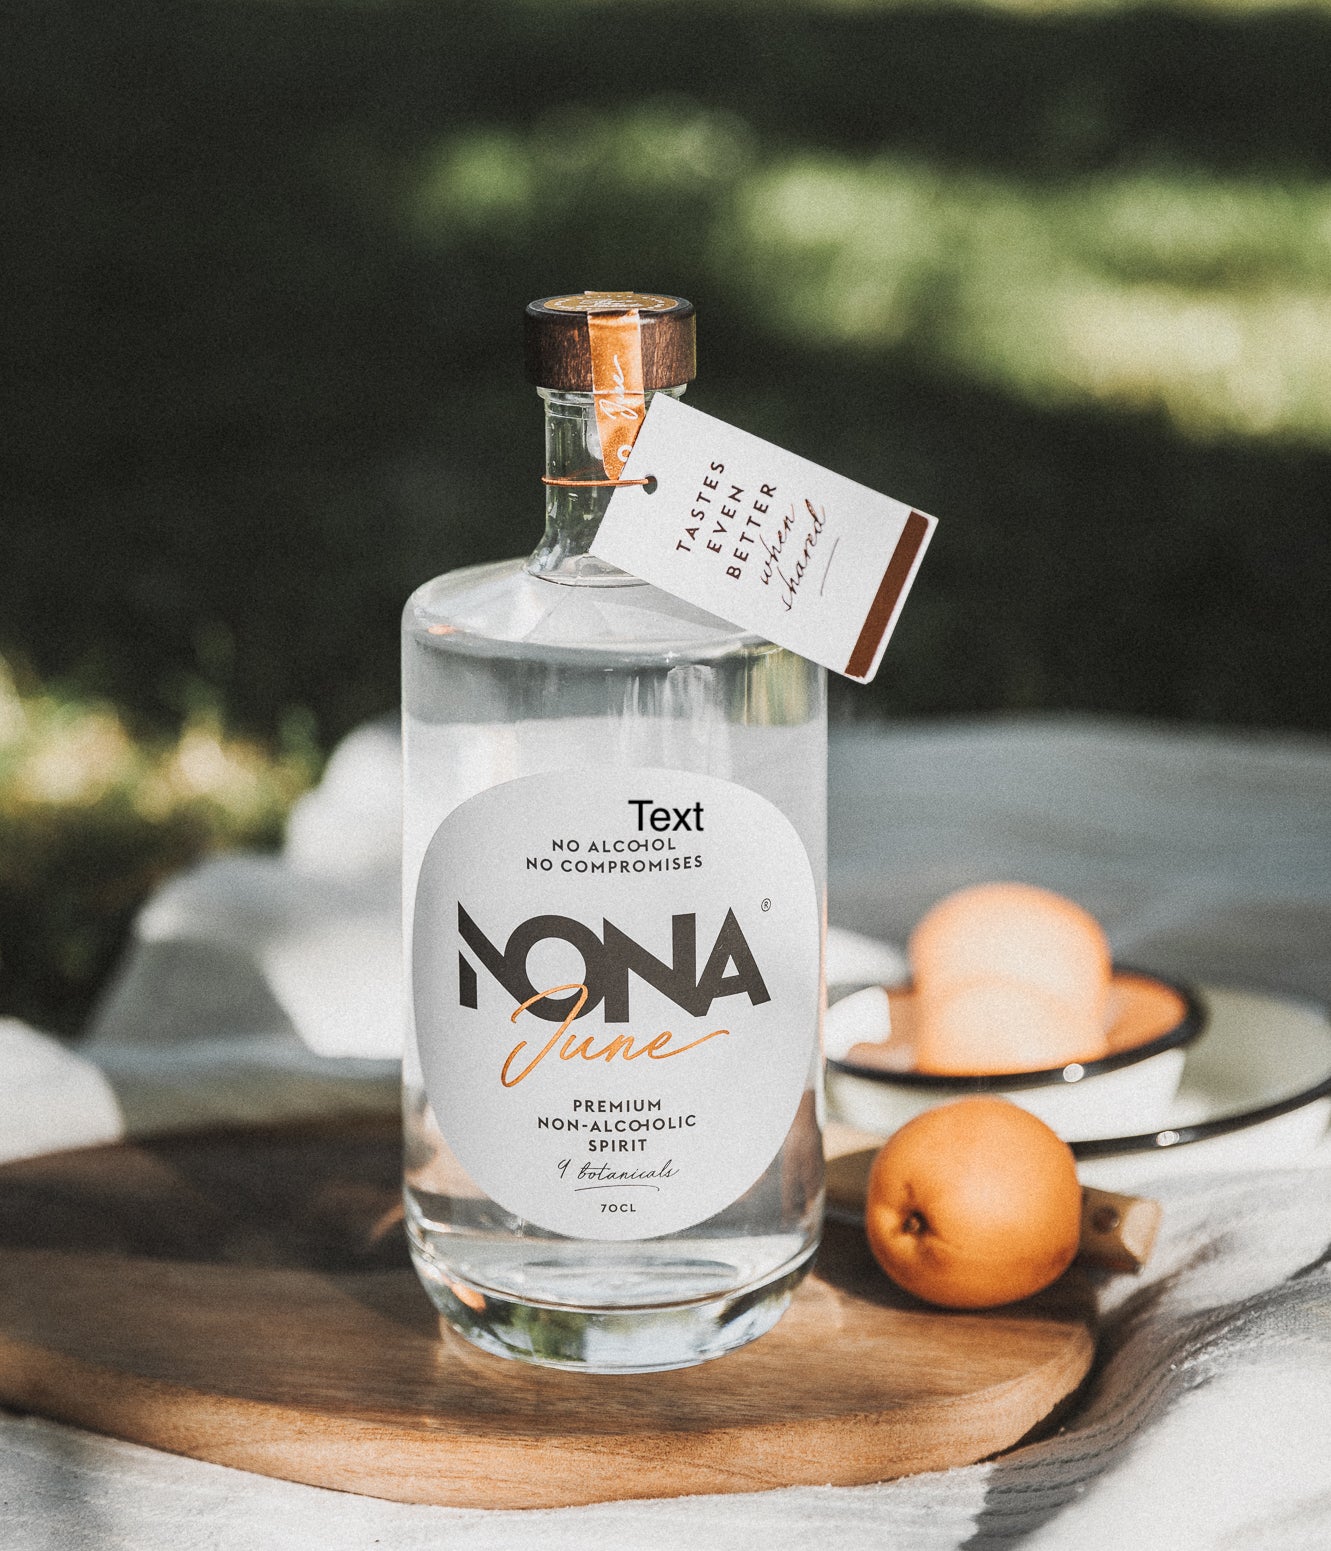 Nona June Premium - noch ein alkoholfreier Gin?